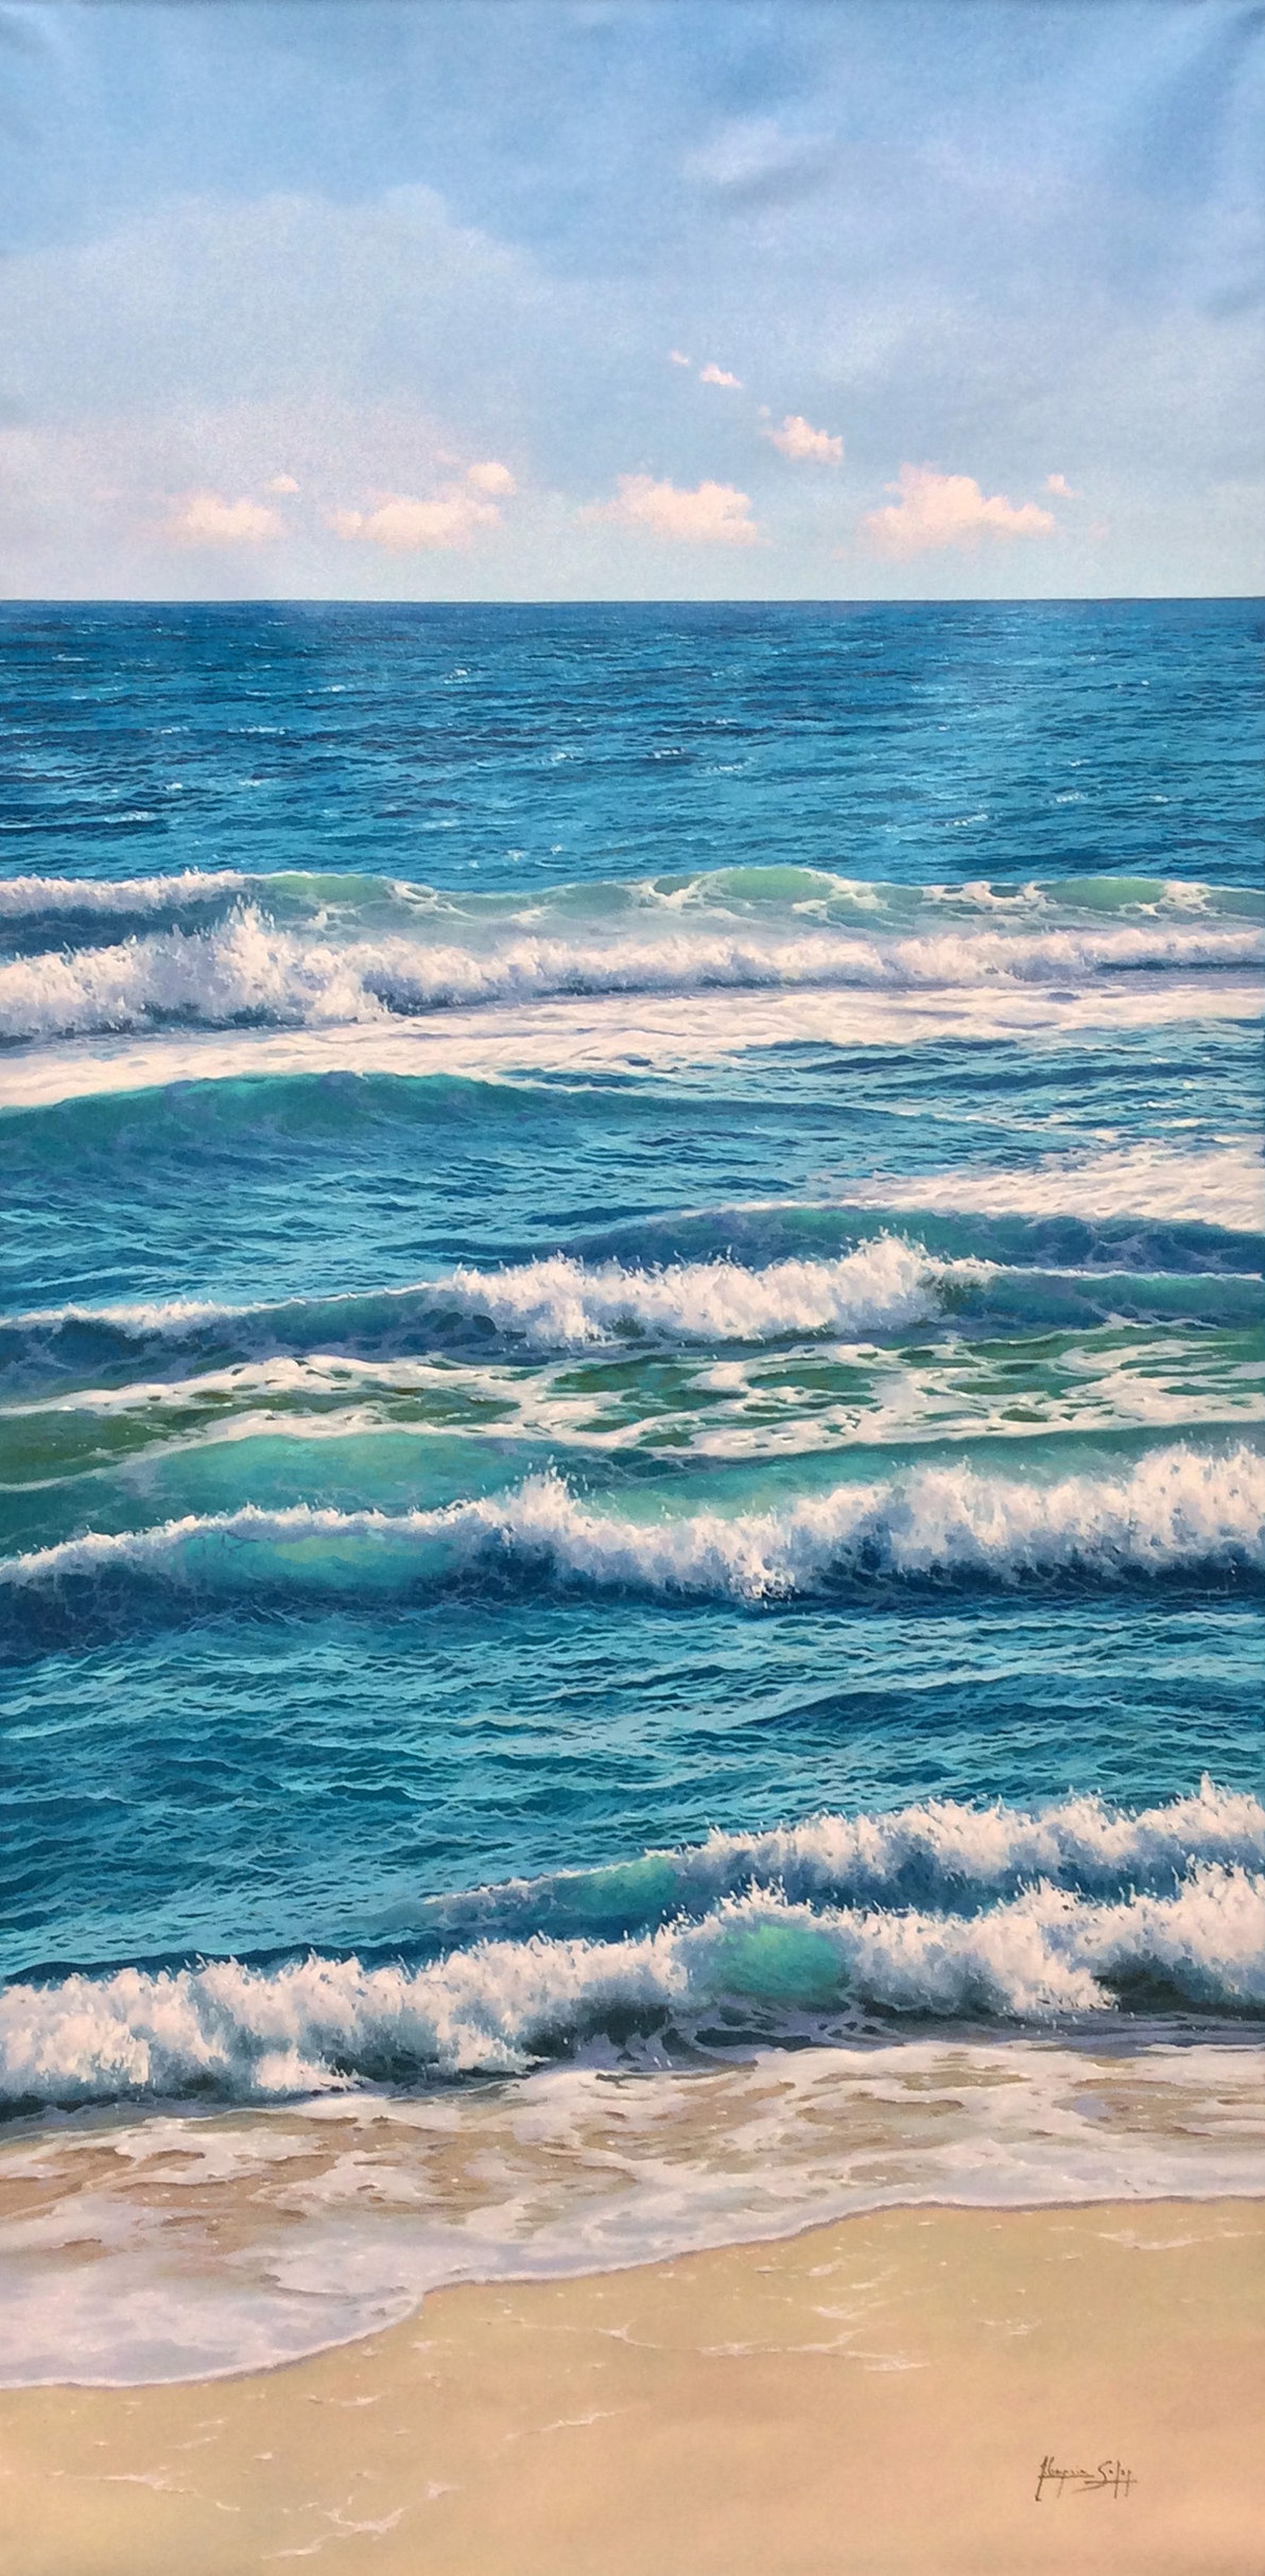 Ocean View I by Antonio Soler